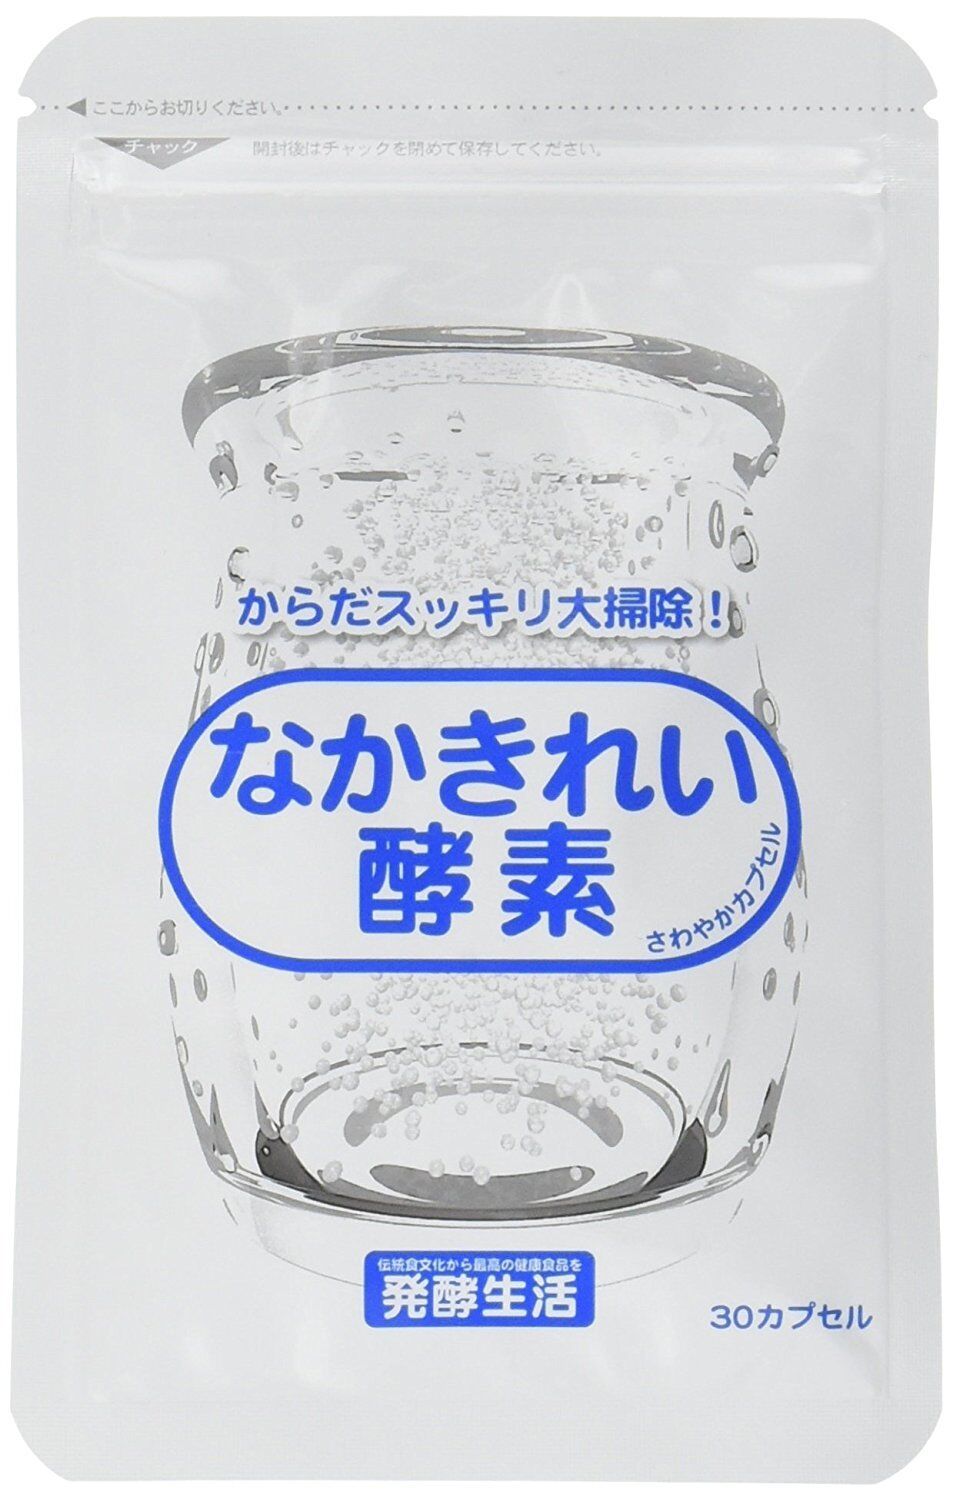 Enzyme Pretty Clean Diet naka kirei enzyme nakakirei Natural JAPAN made KOSO Nowy przyjazd, najnowsza praca